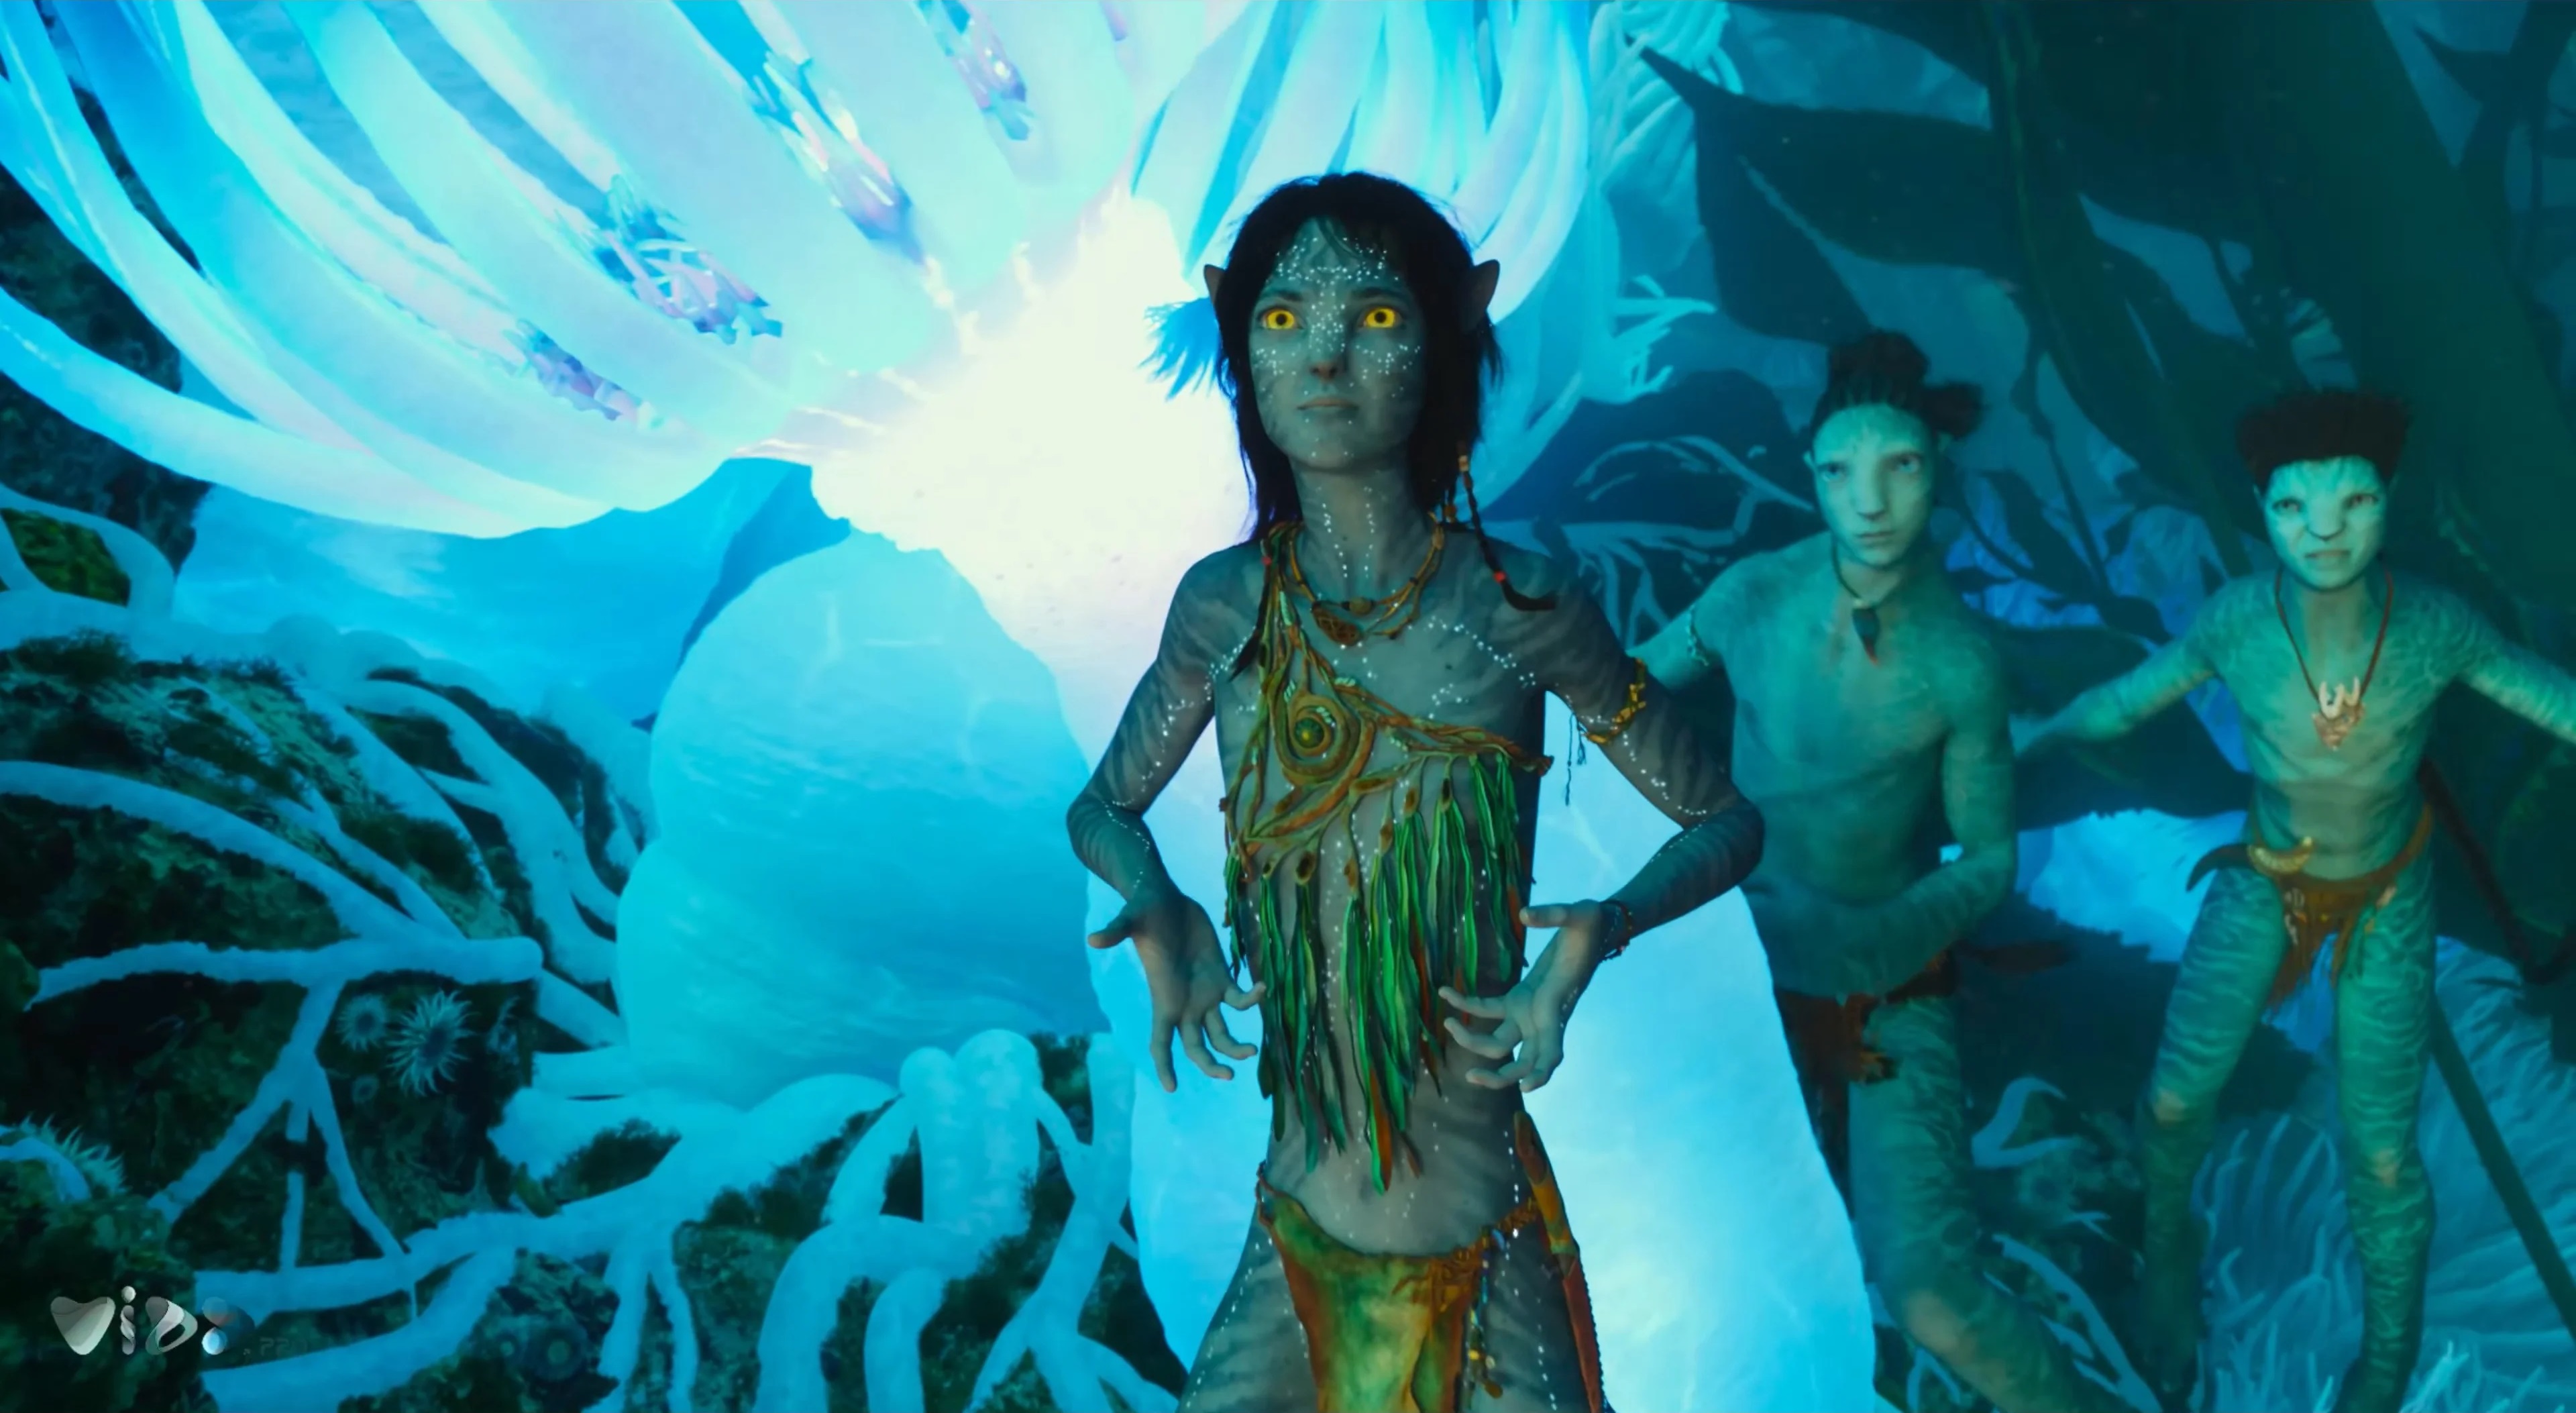 Kiri Avatar 2: Trải nghiệm công nghệ 3D tiên tiến nhất

Được sản xuất với công nghệ 3D tiên tiến nhất hiện nay, Kiri Avatar 2 hứa hẹn sẽ đưa khán giả đến với một trải nghiệm điện ảnh độc đáo và tuyệt vời. Các cảnh quay hoành tráng và đồ họa chân thực như thật chắc chắn sẽ khiến bạn cảm thấy như đang sống trong một thế giới hoàn toàn mới.